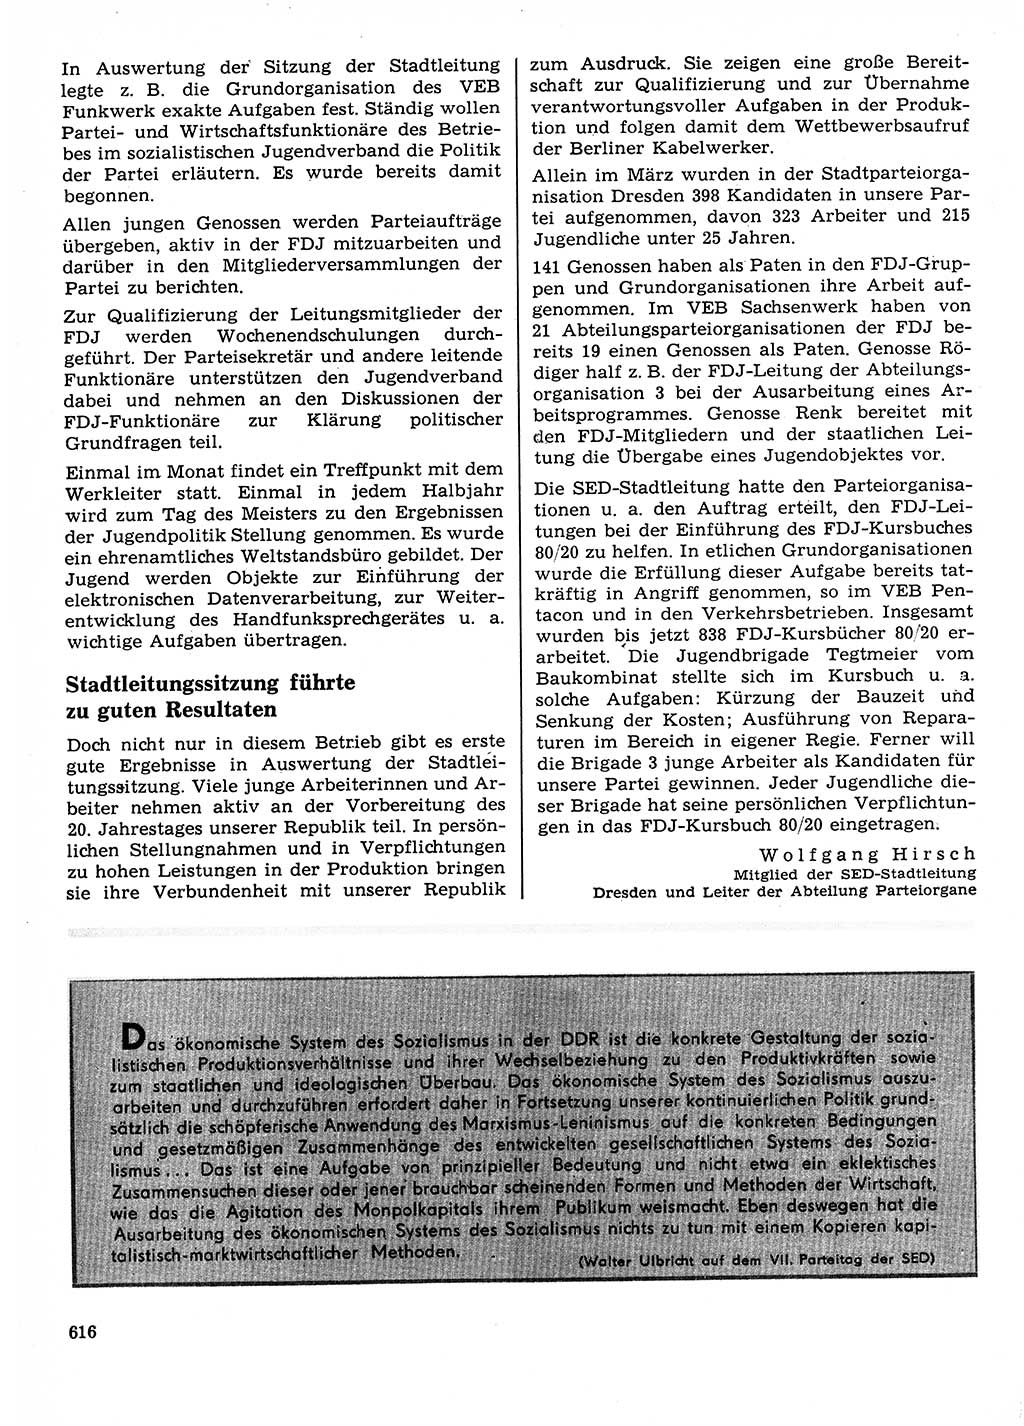 Neuer Weg (NW), Organ des Zentralkomitees (ZK) der SED (Sozialistische Einheitspartei Deutschlands) für Fragen des Parteilebens, 23. Jahrgang [Deutsche Demokratische Republik (DDR)] 1968, Seite 616 (NW ZK SED DDR 1968, S. 616)